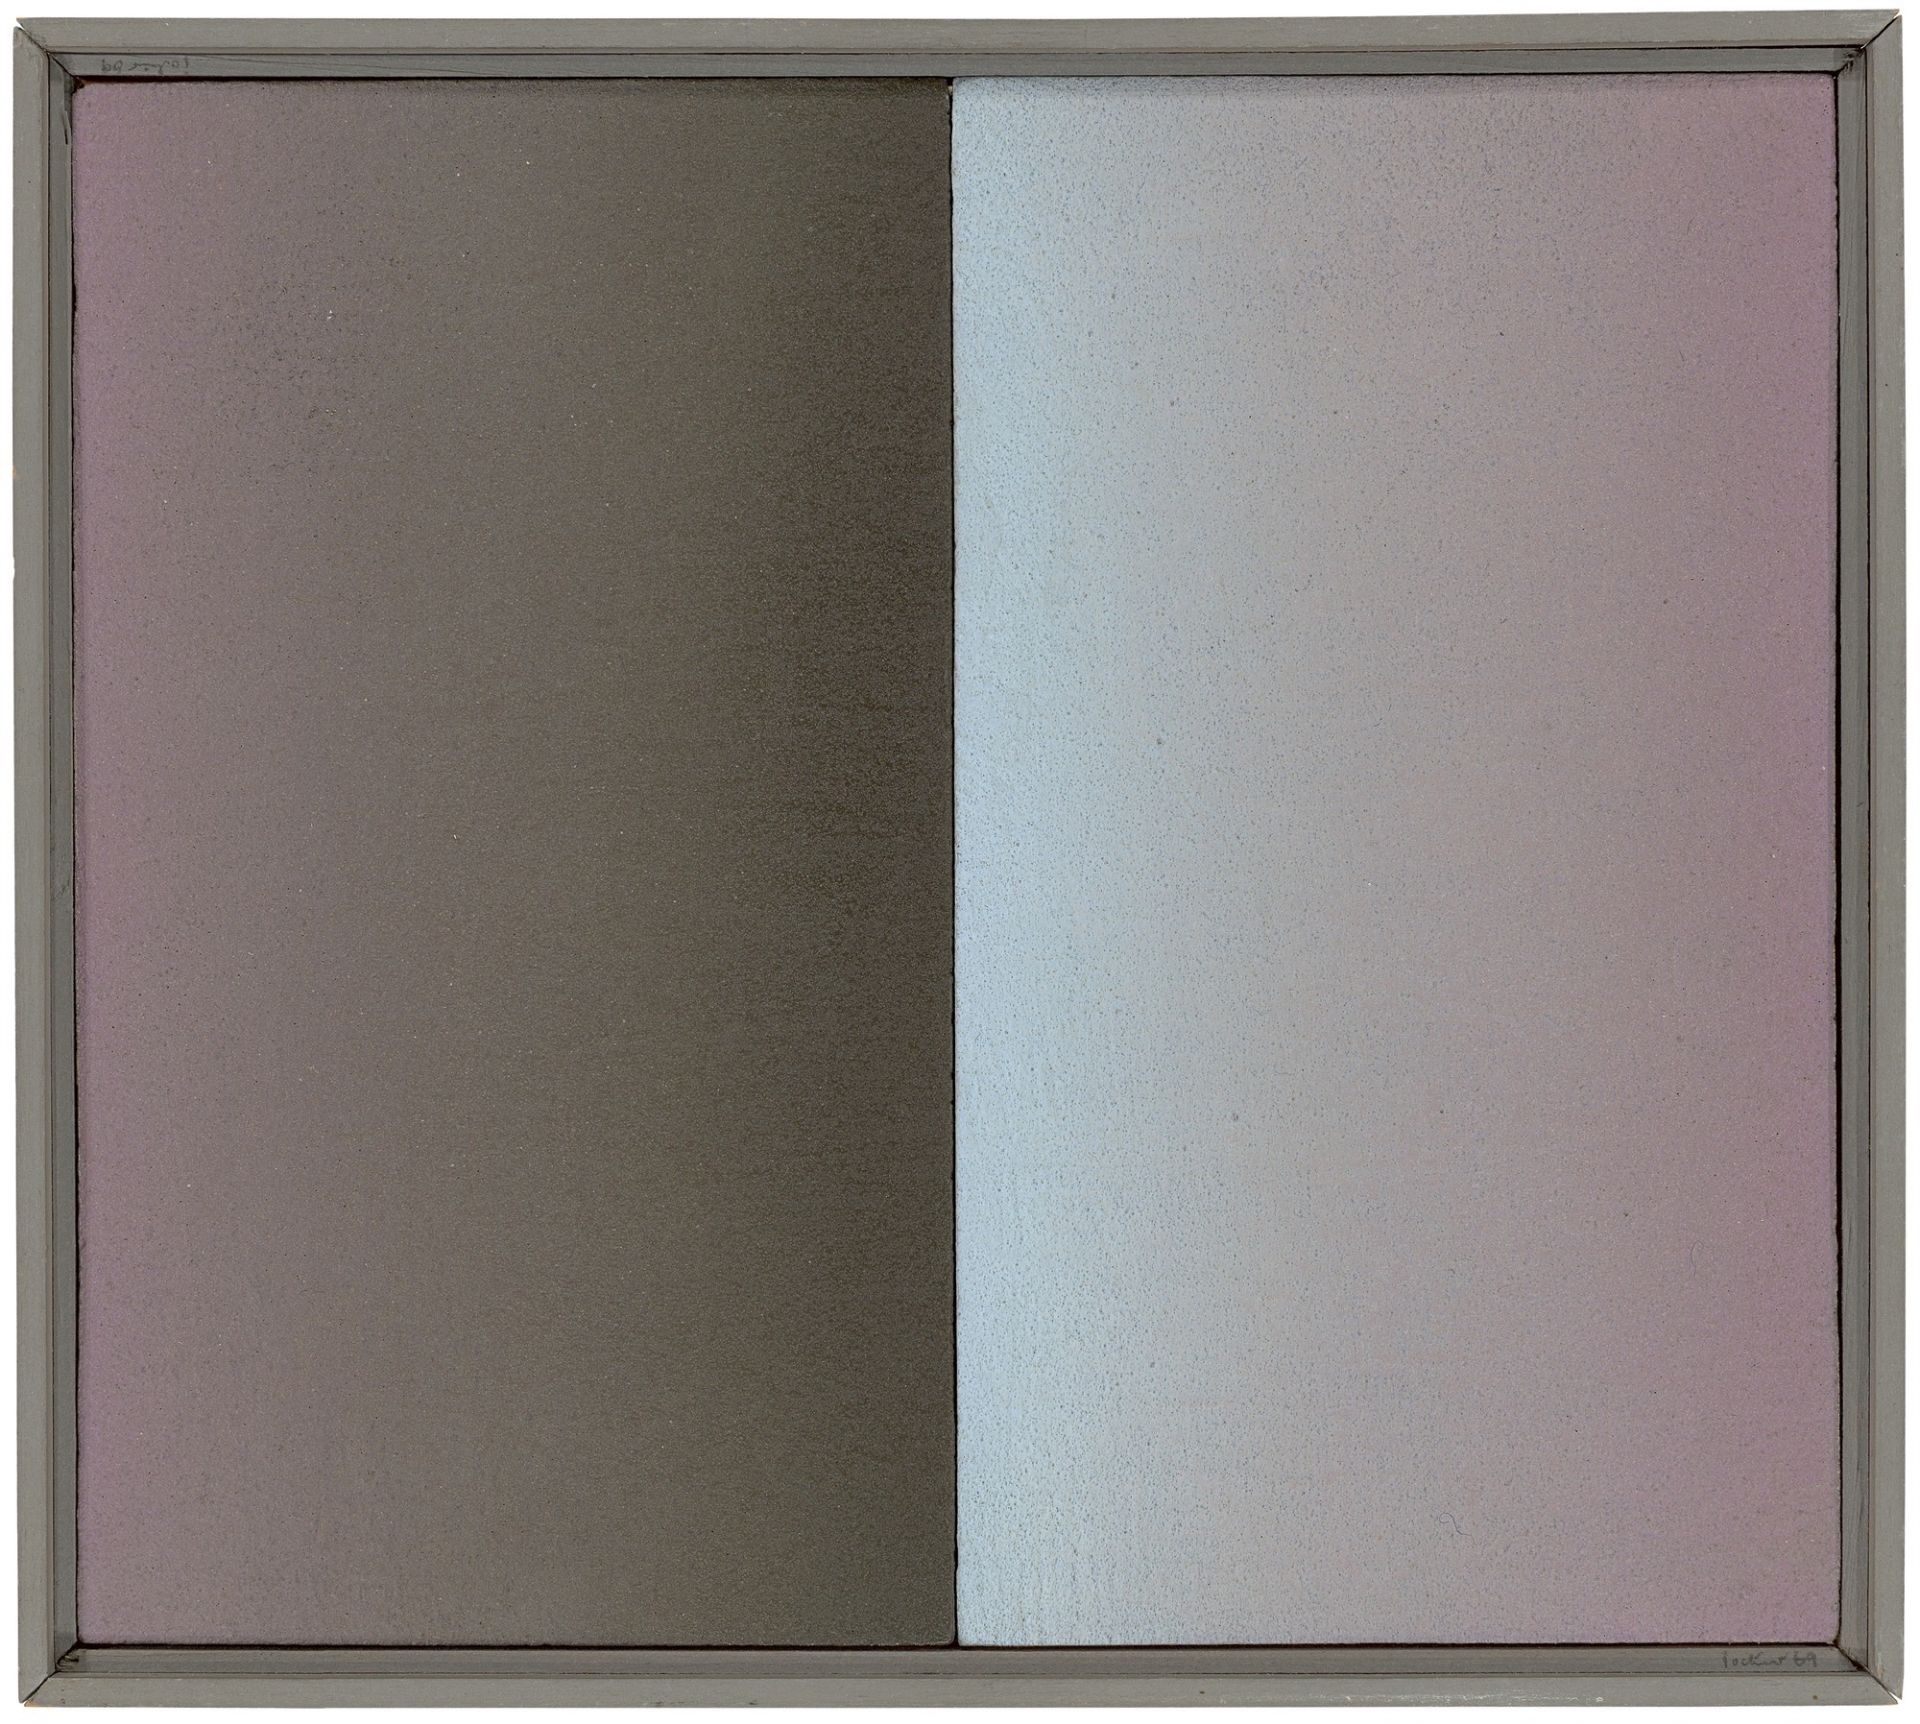 Raimer Jochims. „Je doch“ (chromatische Zweifläche). 1968/69